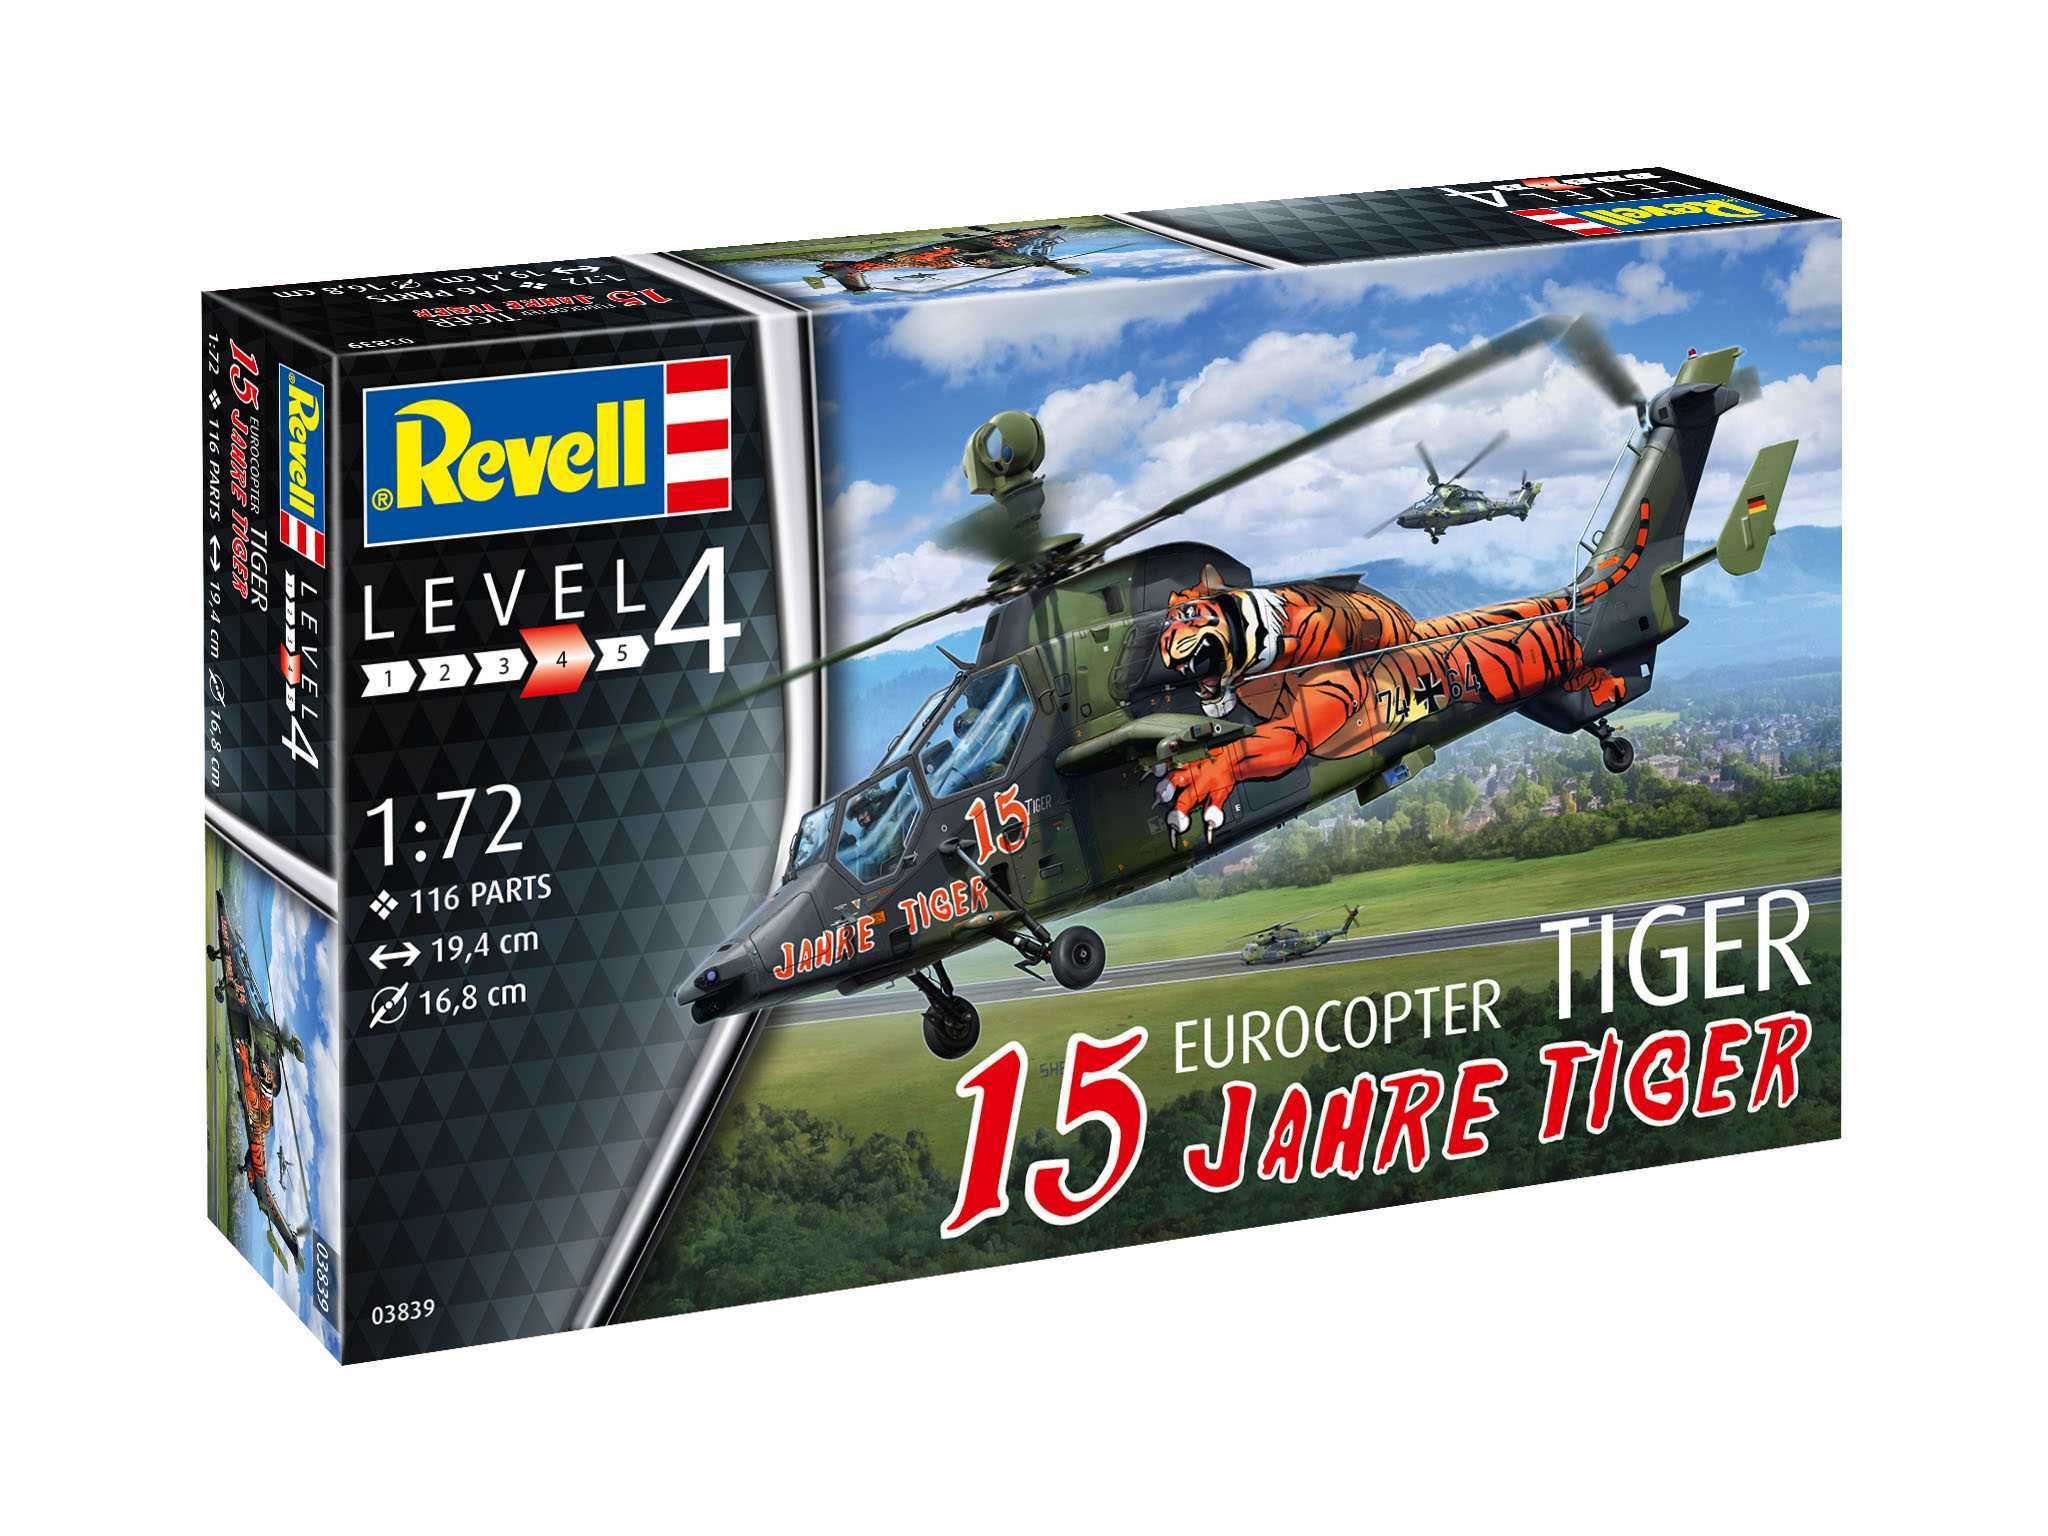 Fotografie ModelSet vrtulník 63839 - Eurocopter Tiger - "15 Years Tiger" (1:72) Revell